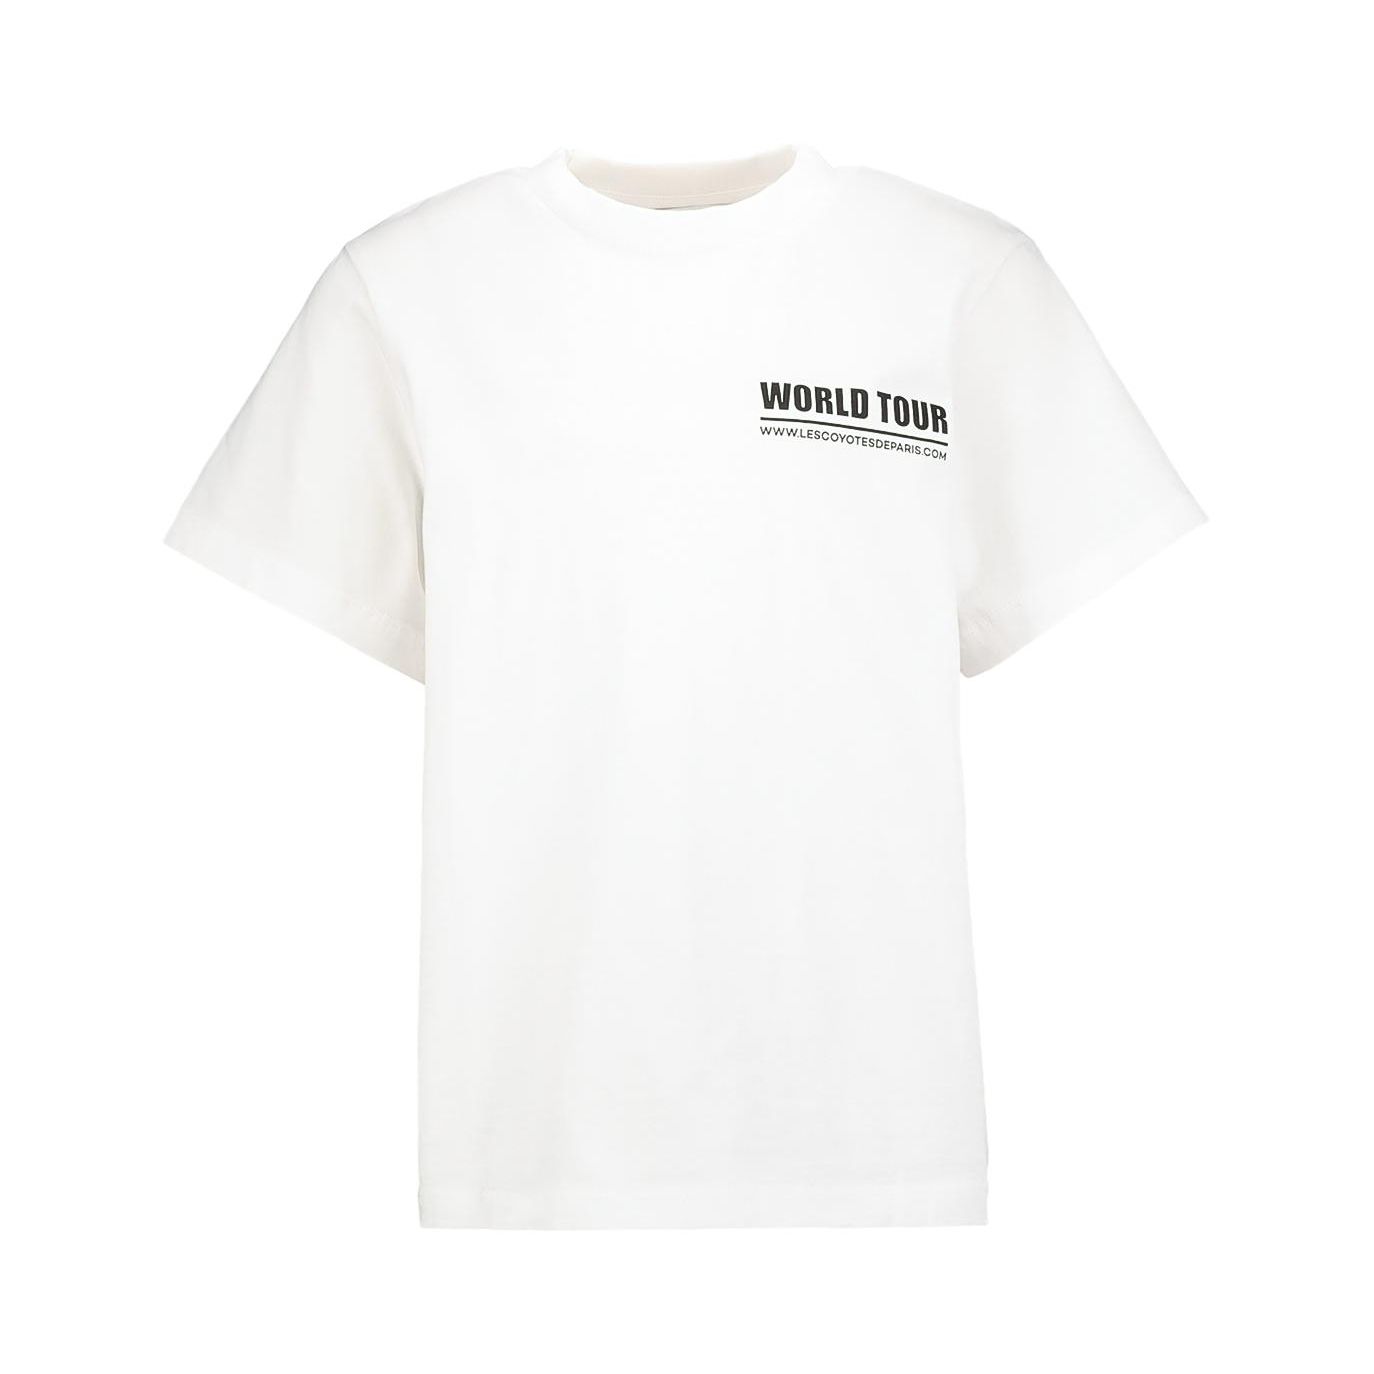 Les Coyotes de Paris - Cindy T-shirt White - Shirts & T-shirts - 111-22-107 